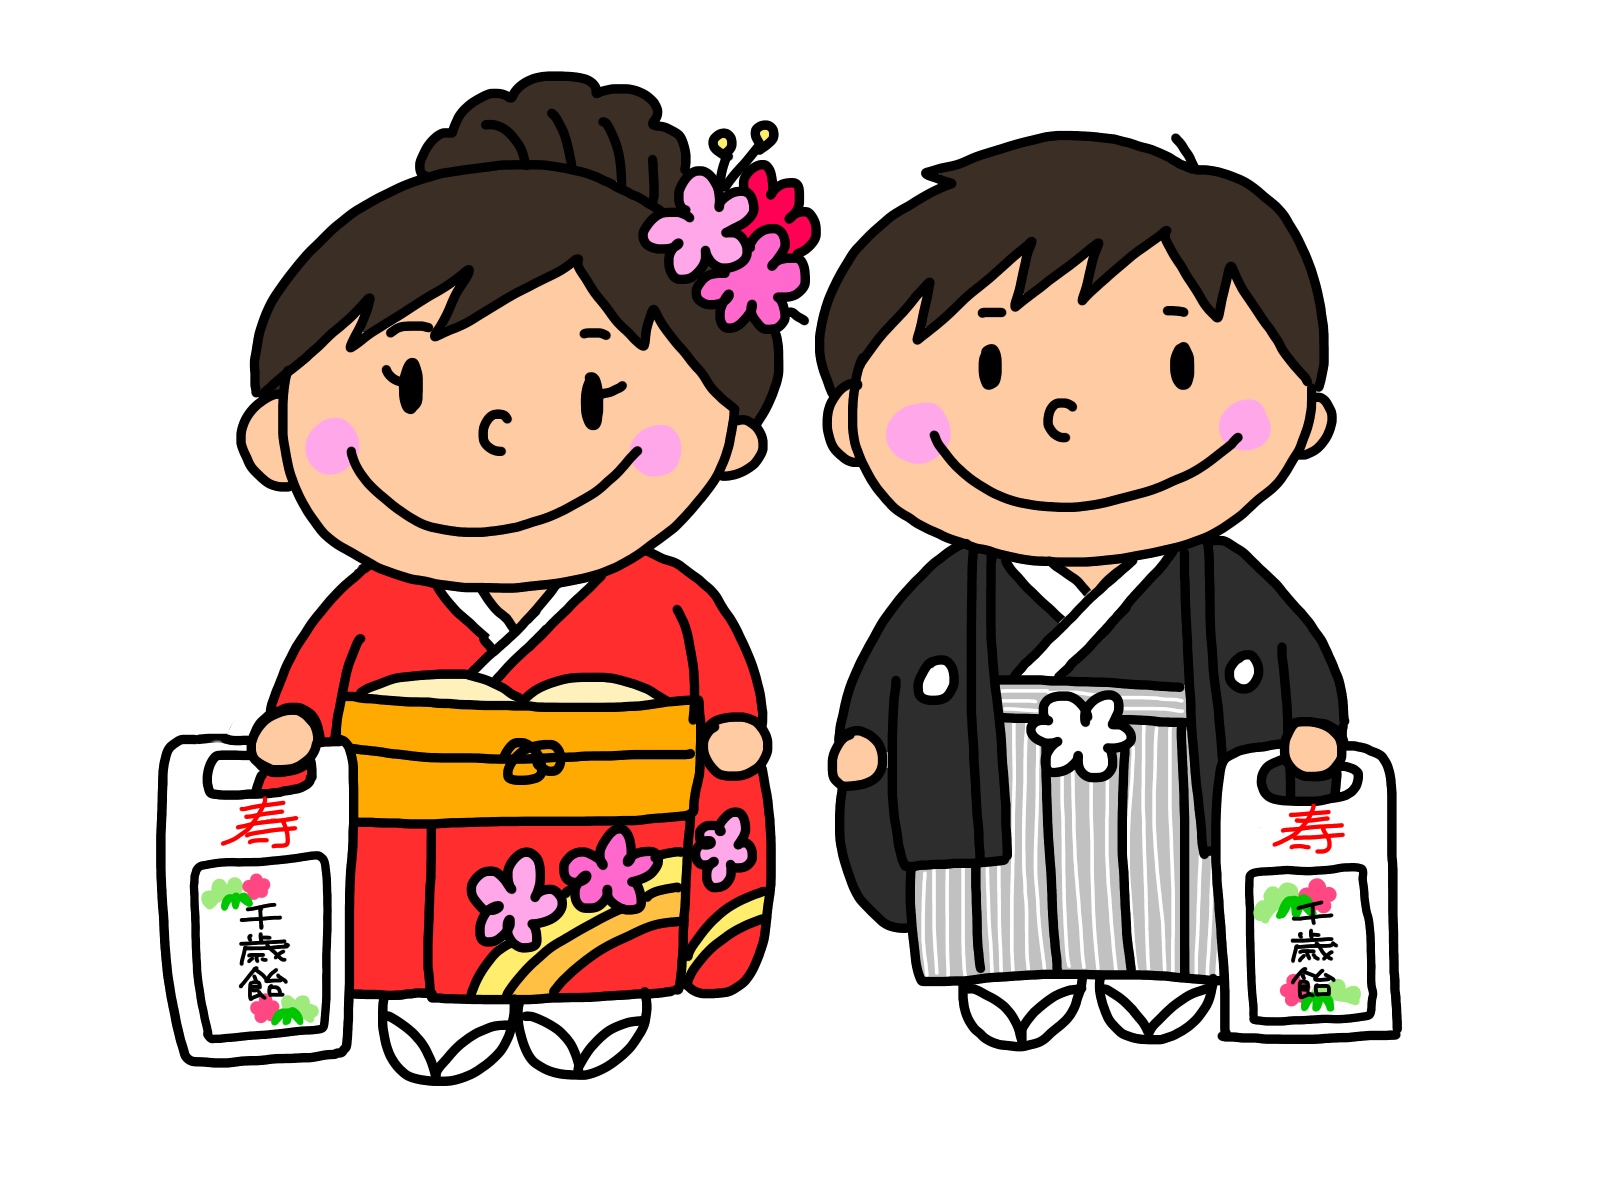 草津市 七五三詣りは立木神社へ お子さまの健やかな成長をお祈りしましょう 滋賀のママがイベント 育児 遊び 学びを発信 シガマンマ ピースマム